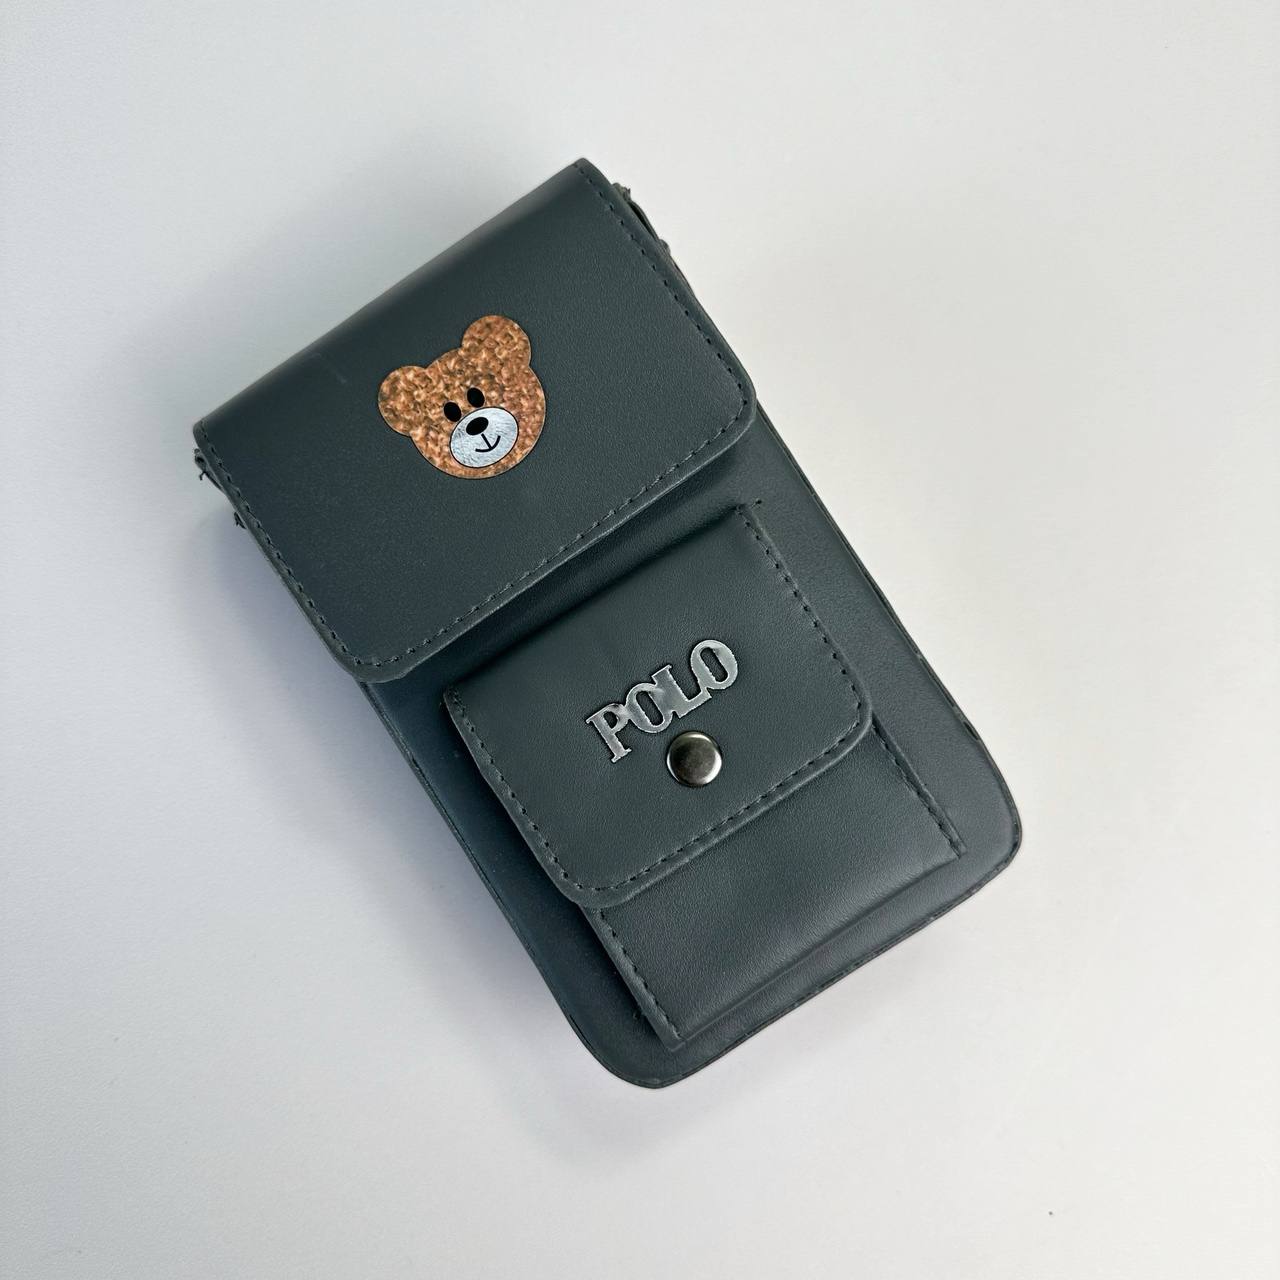 عکس کیف کج خرس پولو - شماره 6